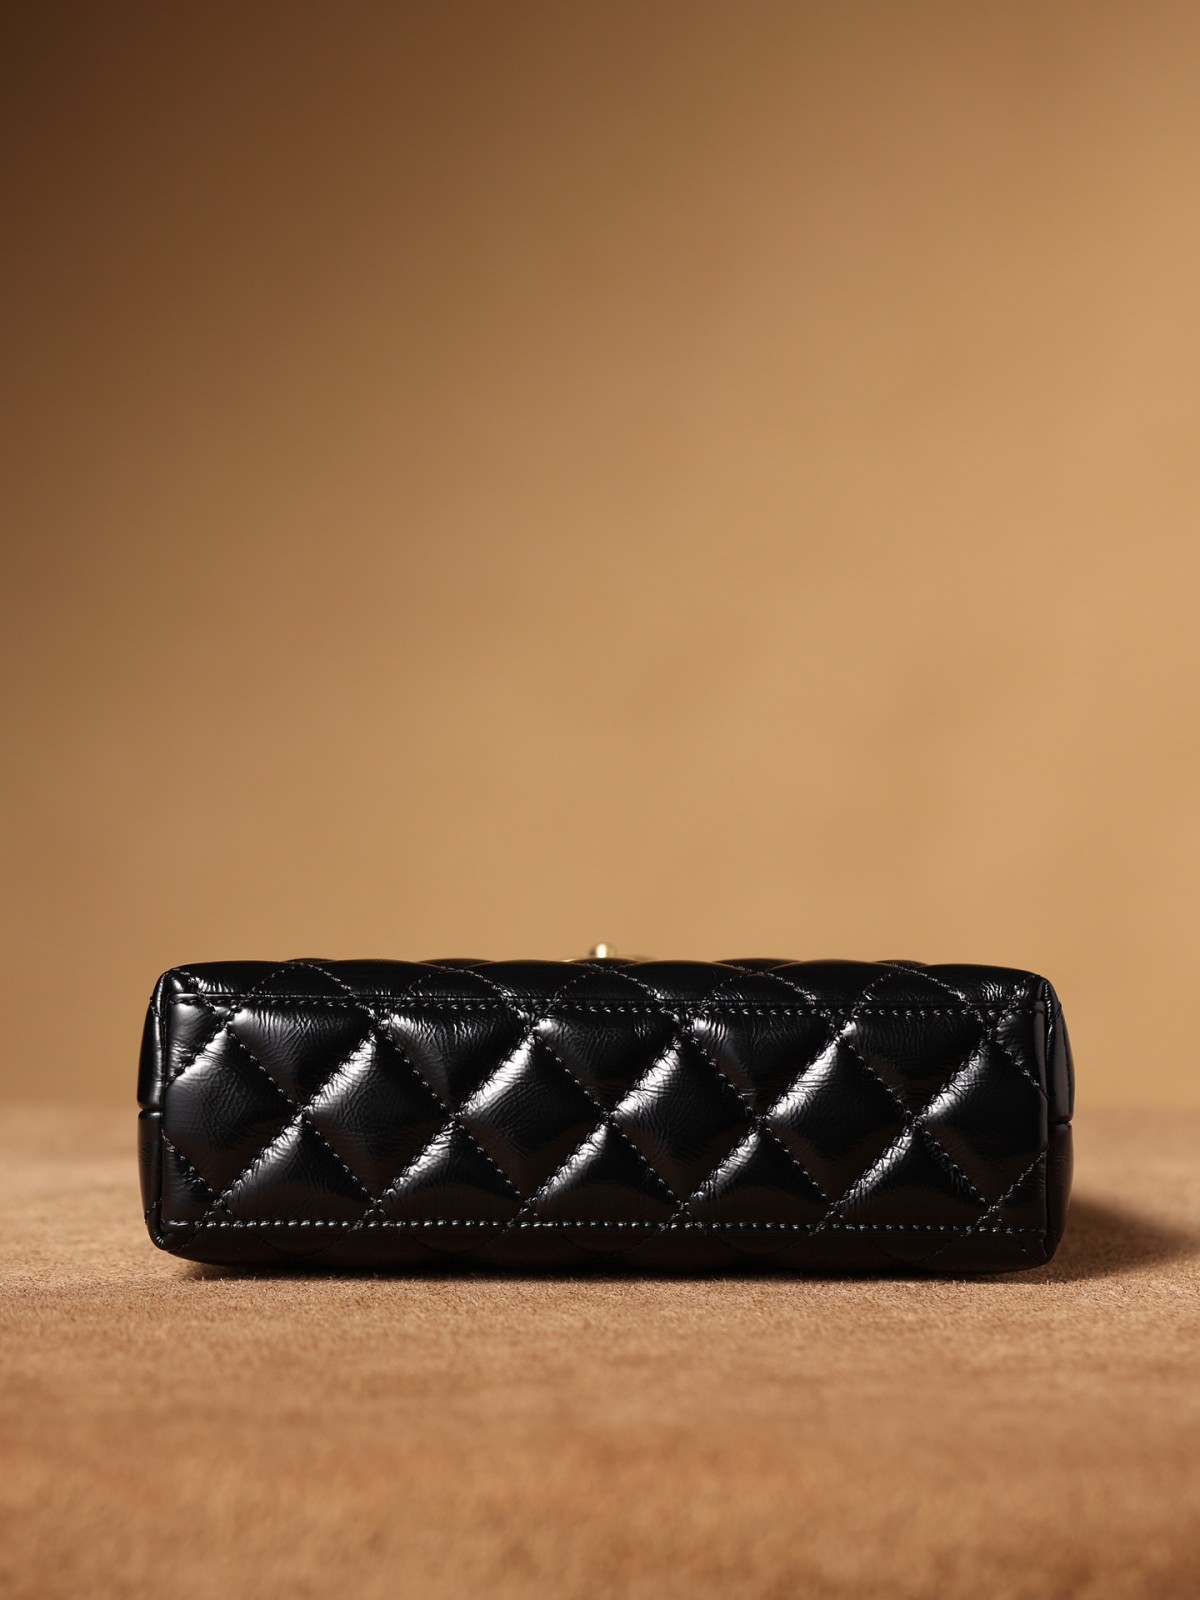 I heard you are looking for Best replica Chanel 23K Kelly bag (2023 Week 52)-ร้านค้าออนไลน์กระเป๋า Louis Vuitton ปลอมคุณภาพดีที่สุด, กระเป๋าออกแบบจำลอง ru